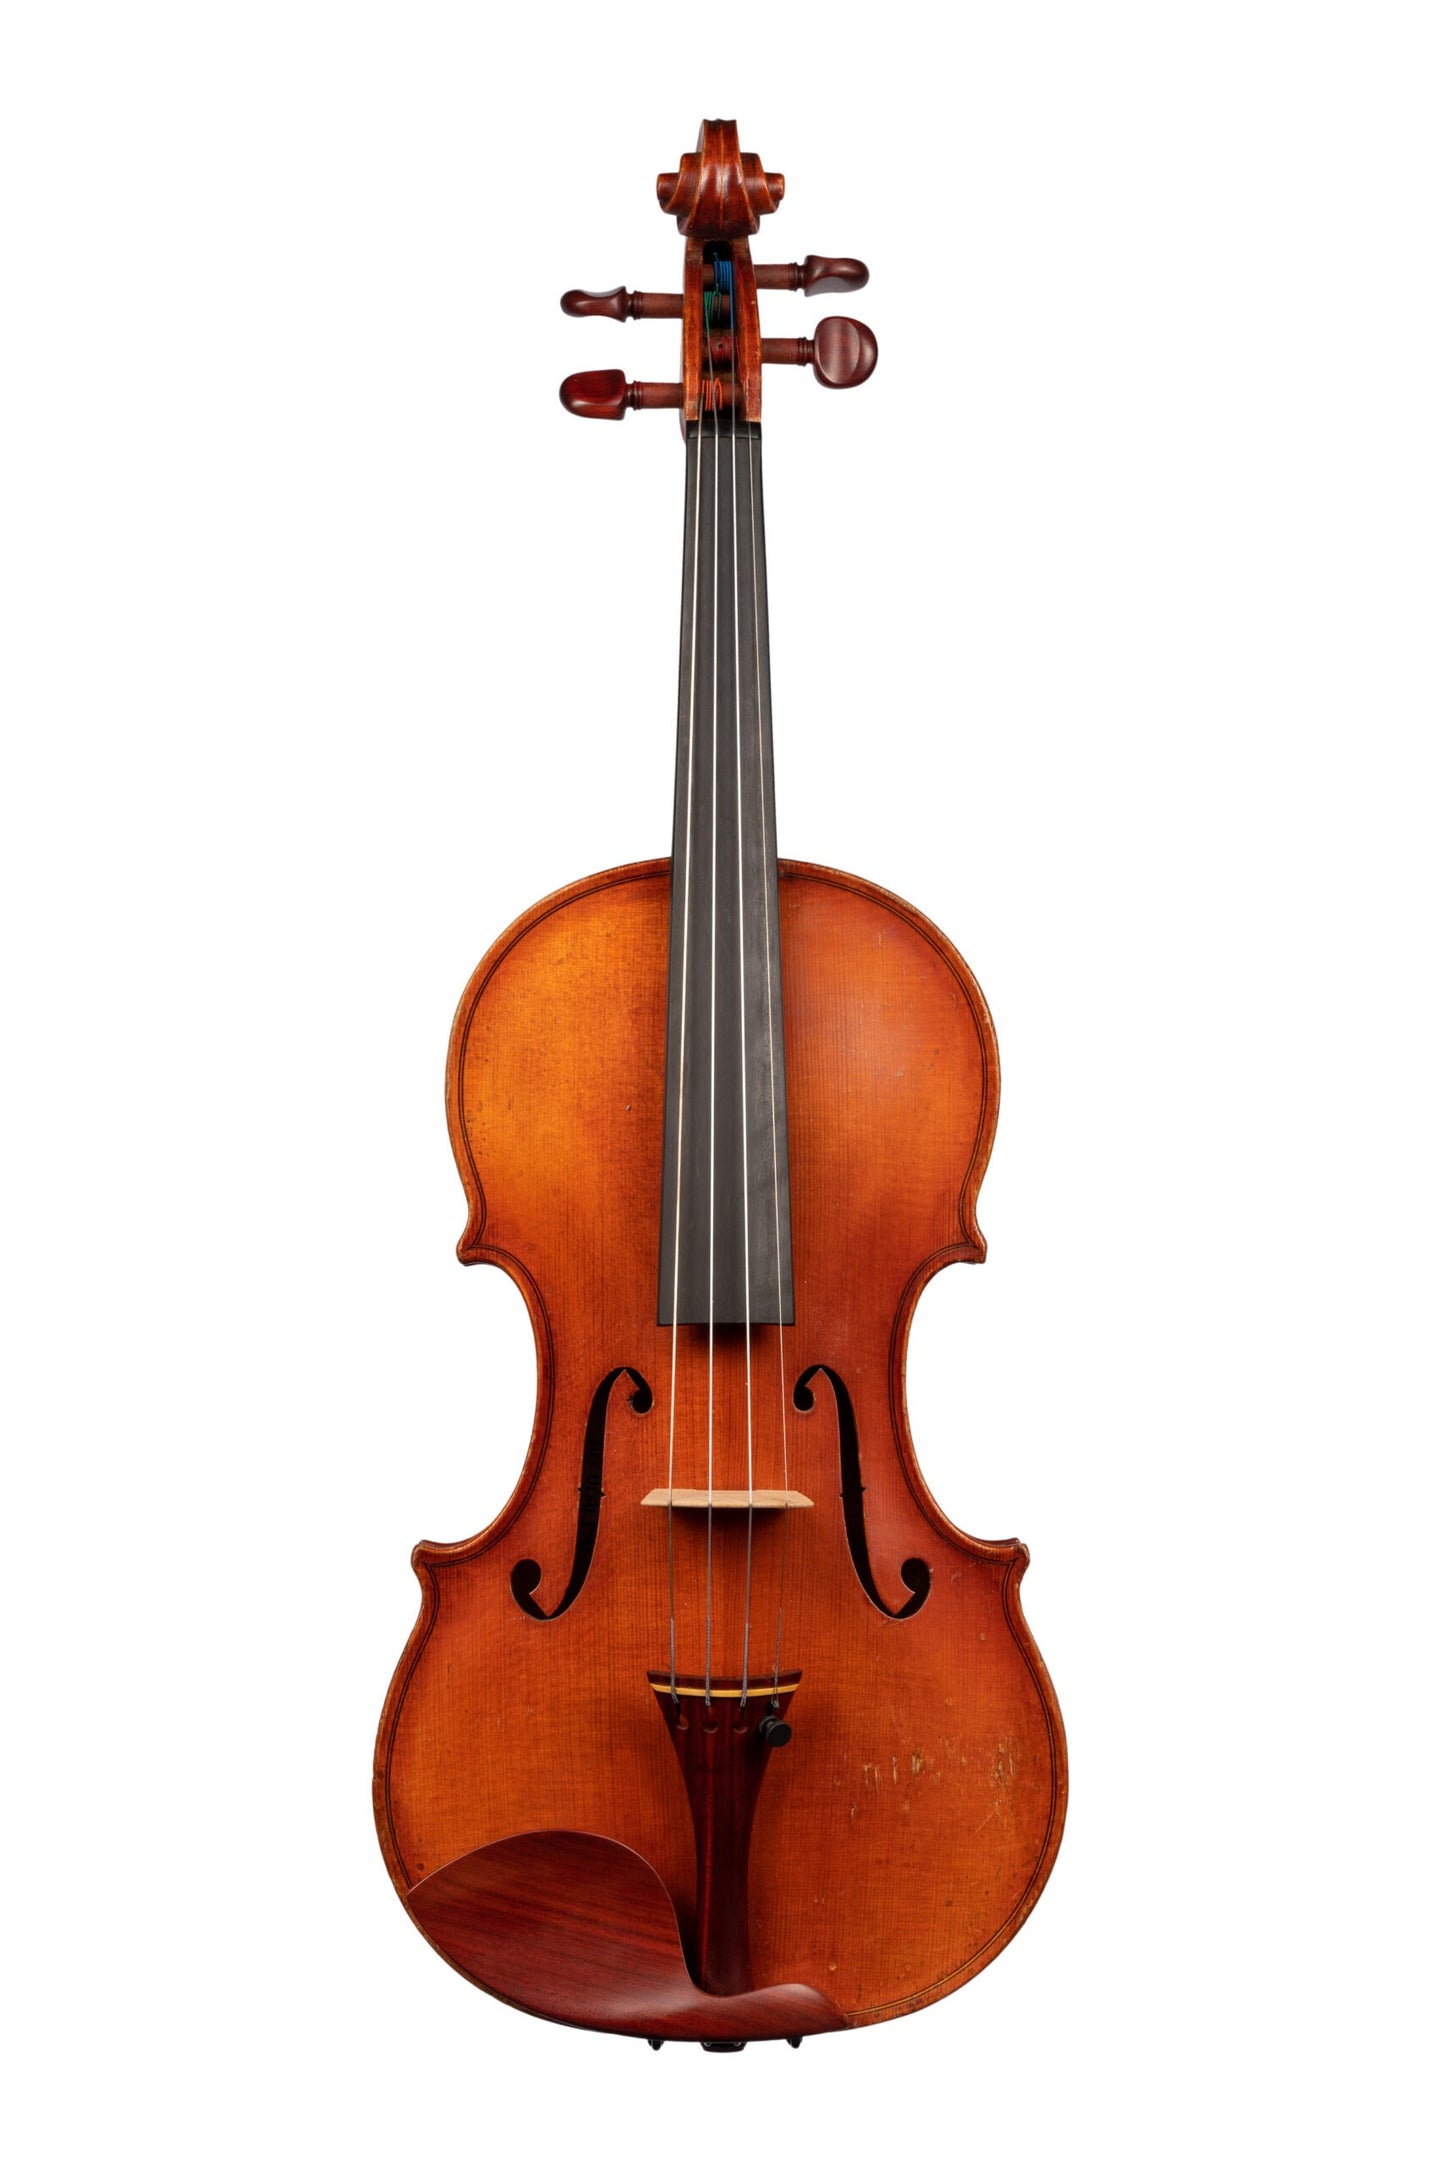 German Violin by German Workshop, GE-161